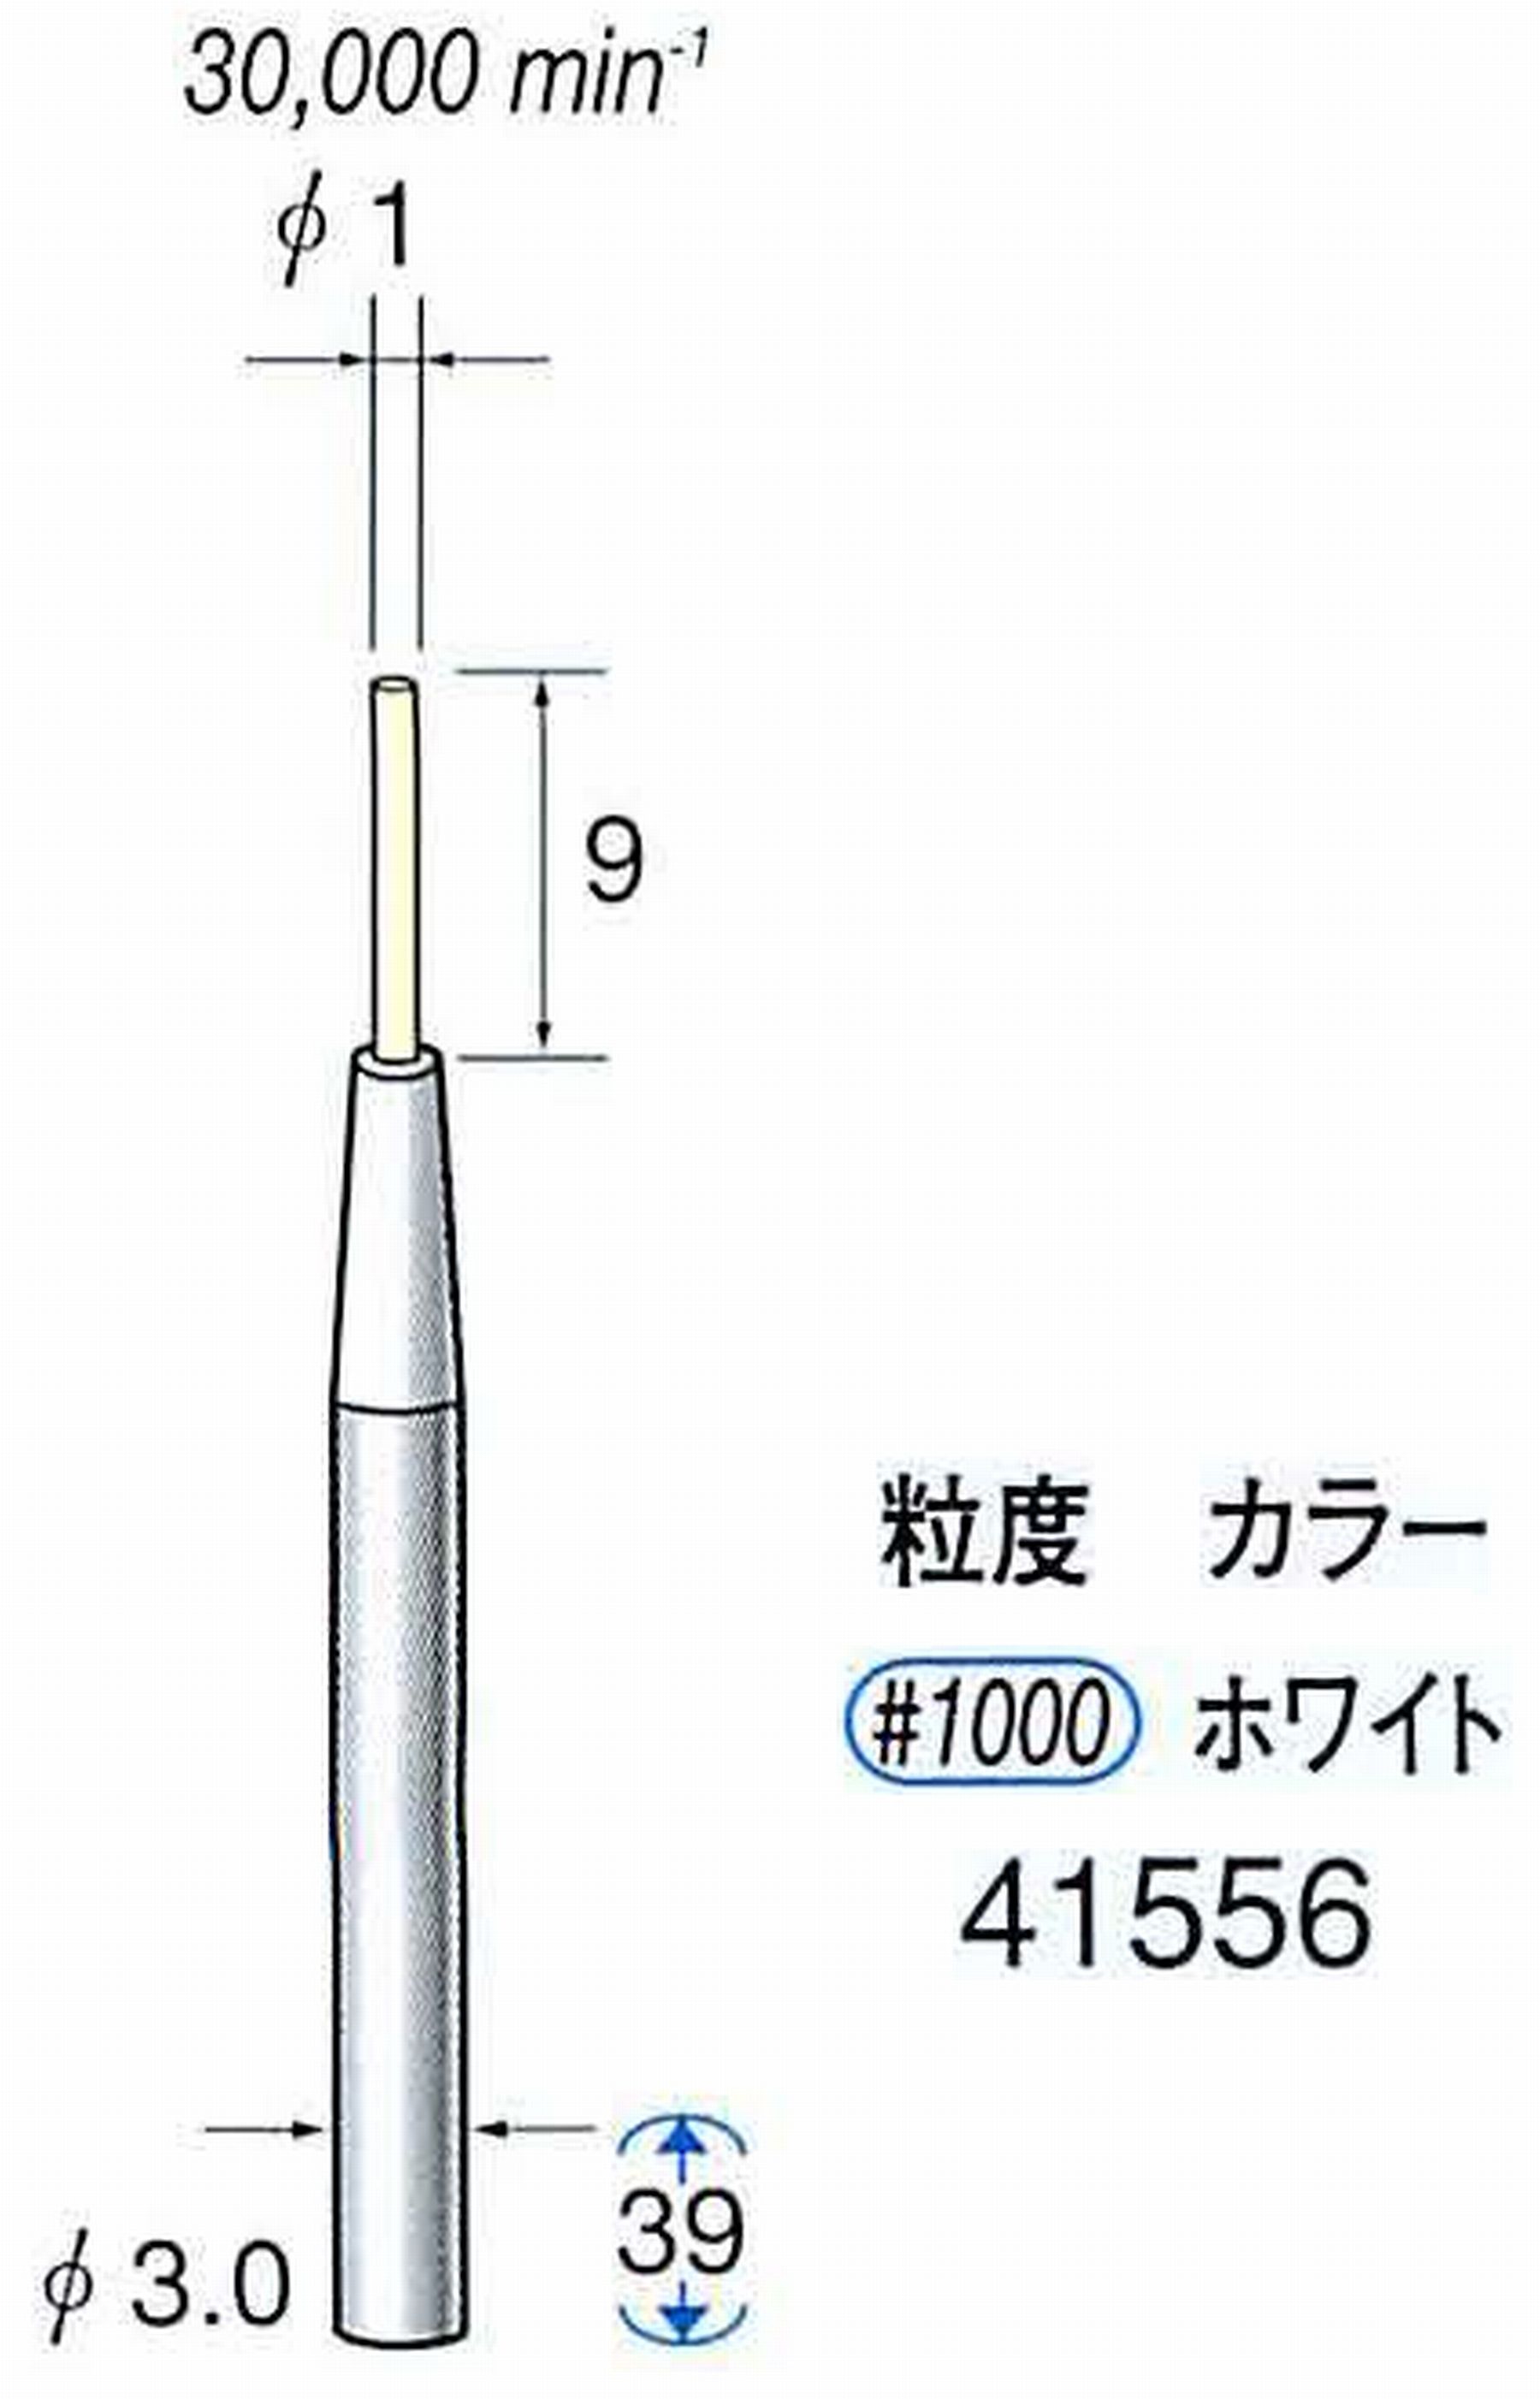 ナカニシ/NAKANISHI セラファイバー精密軸付砥石(カラー ホワイト) 軸径(シャンク) φ3.0mm 41556